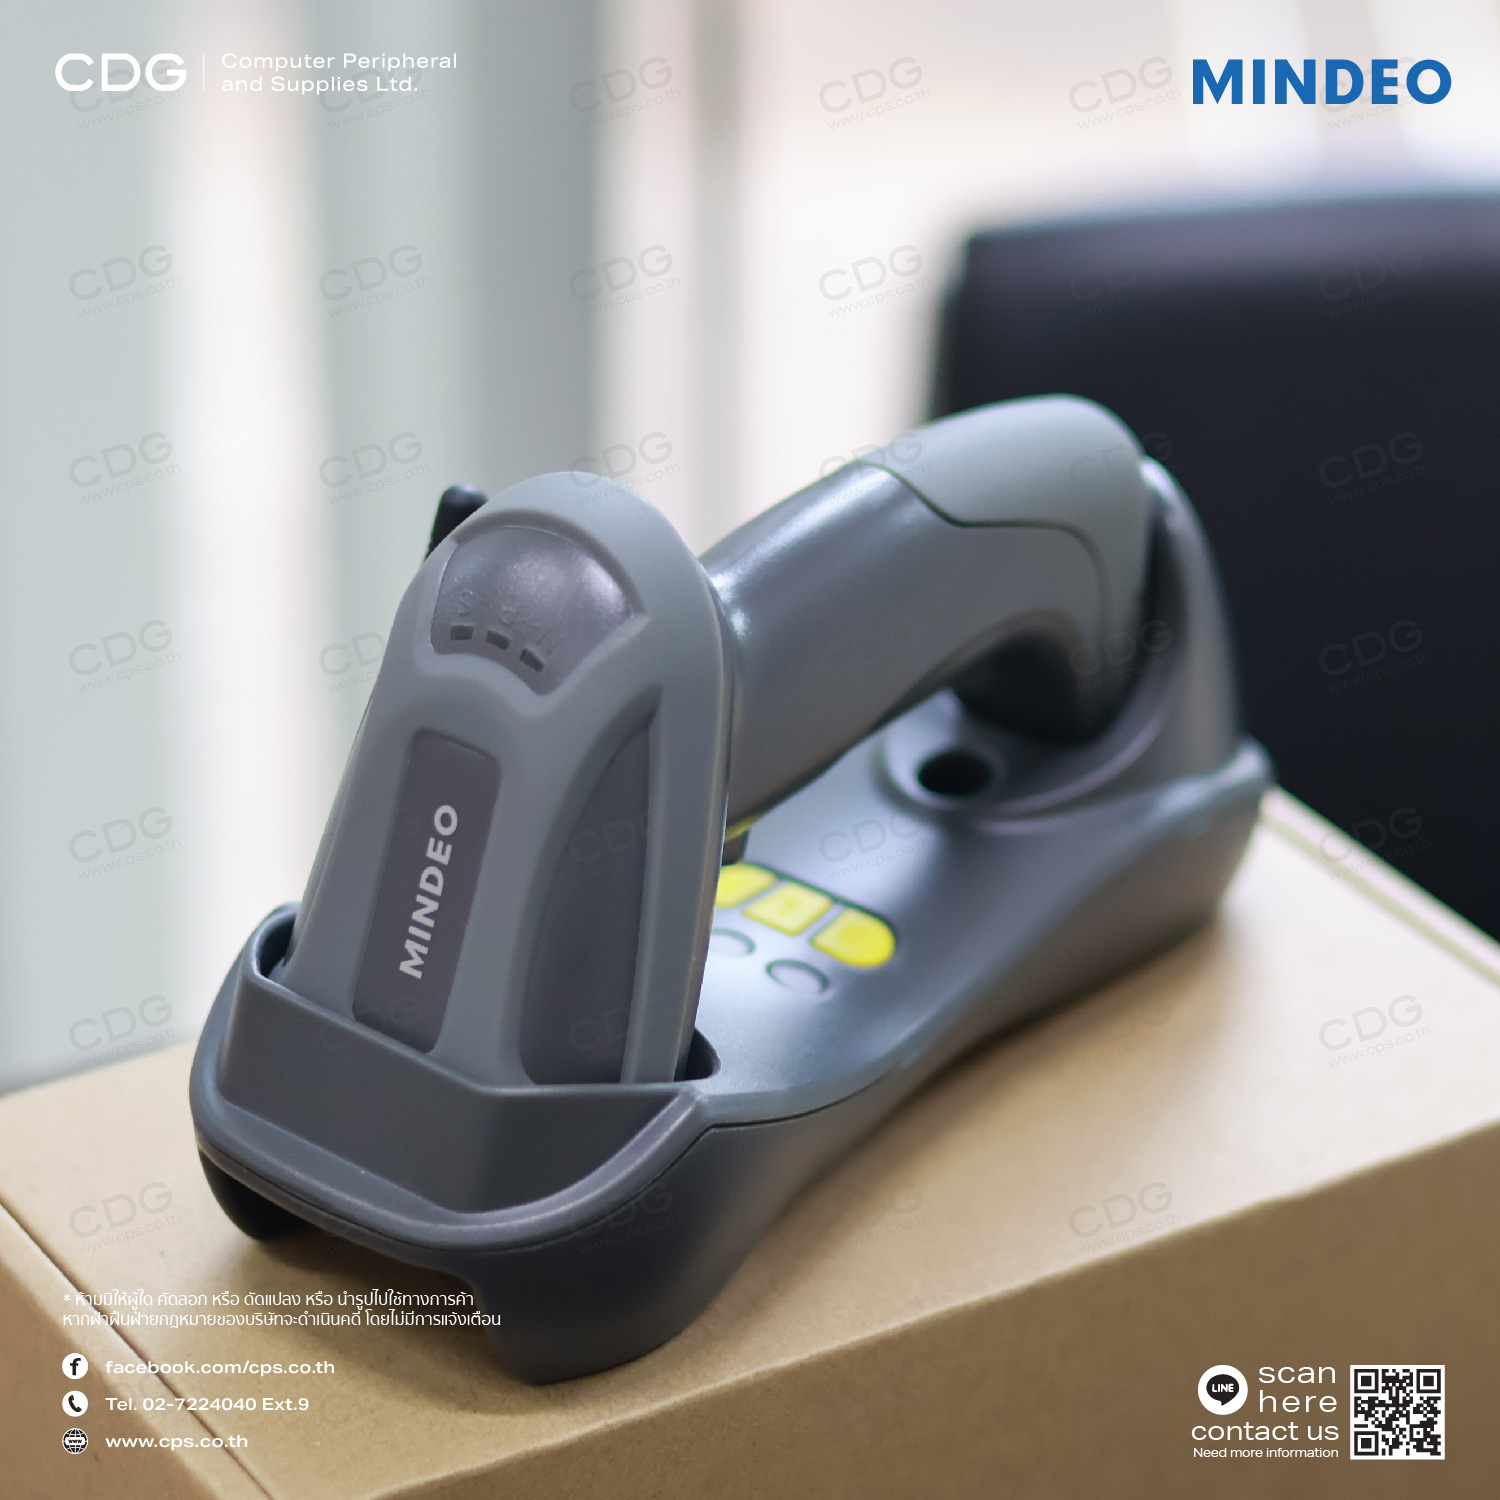 Barcode Scanner Mindeo CS-3290 1D